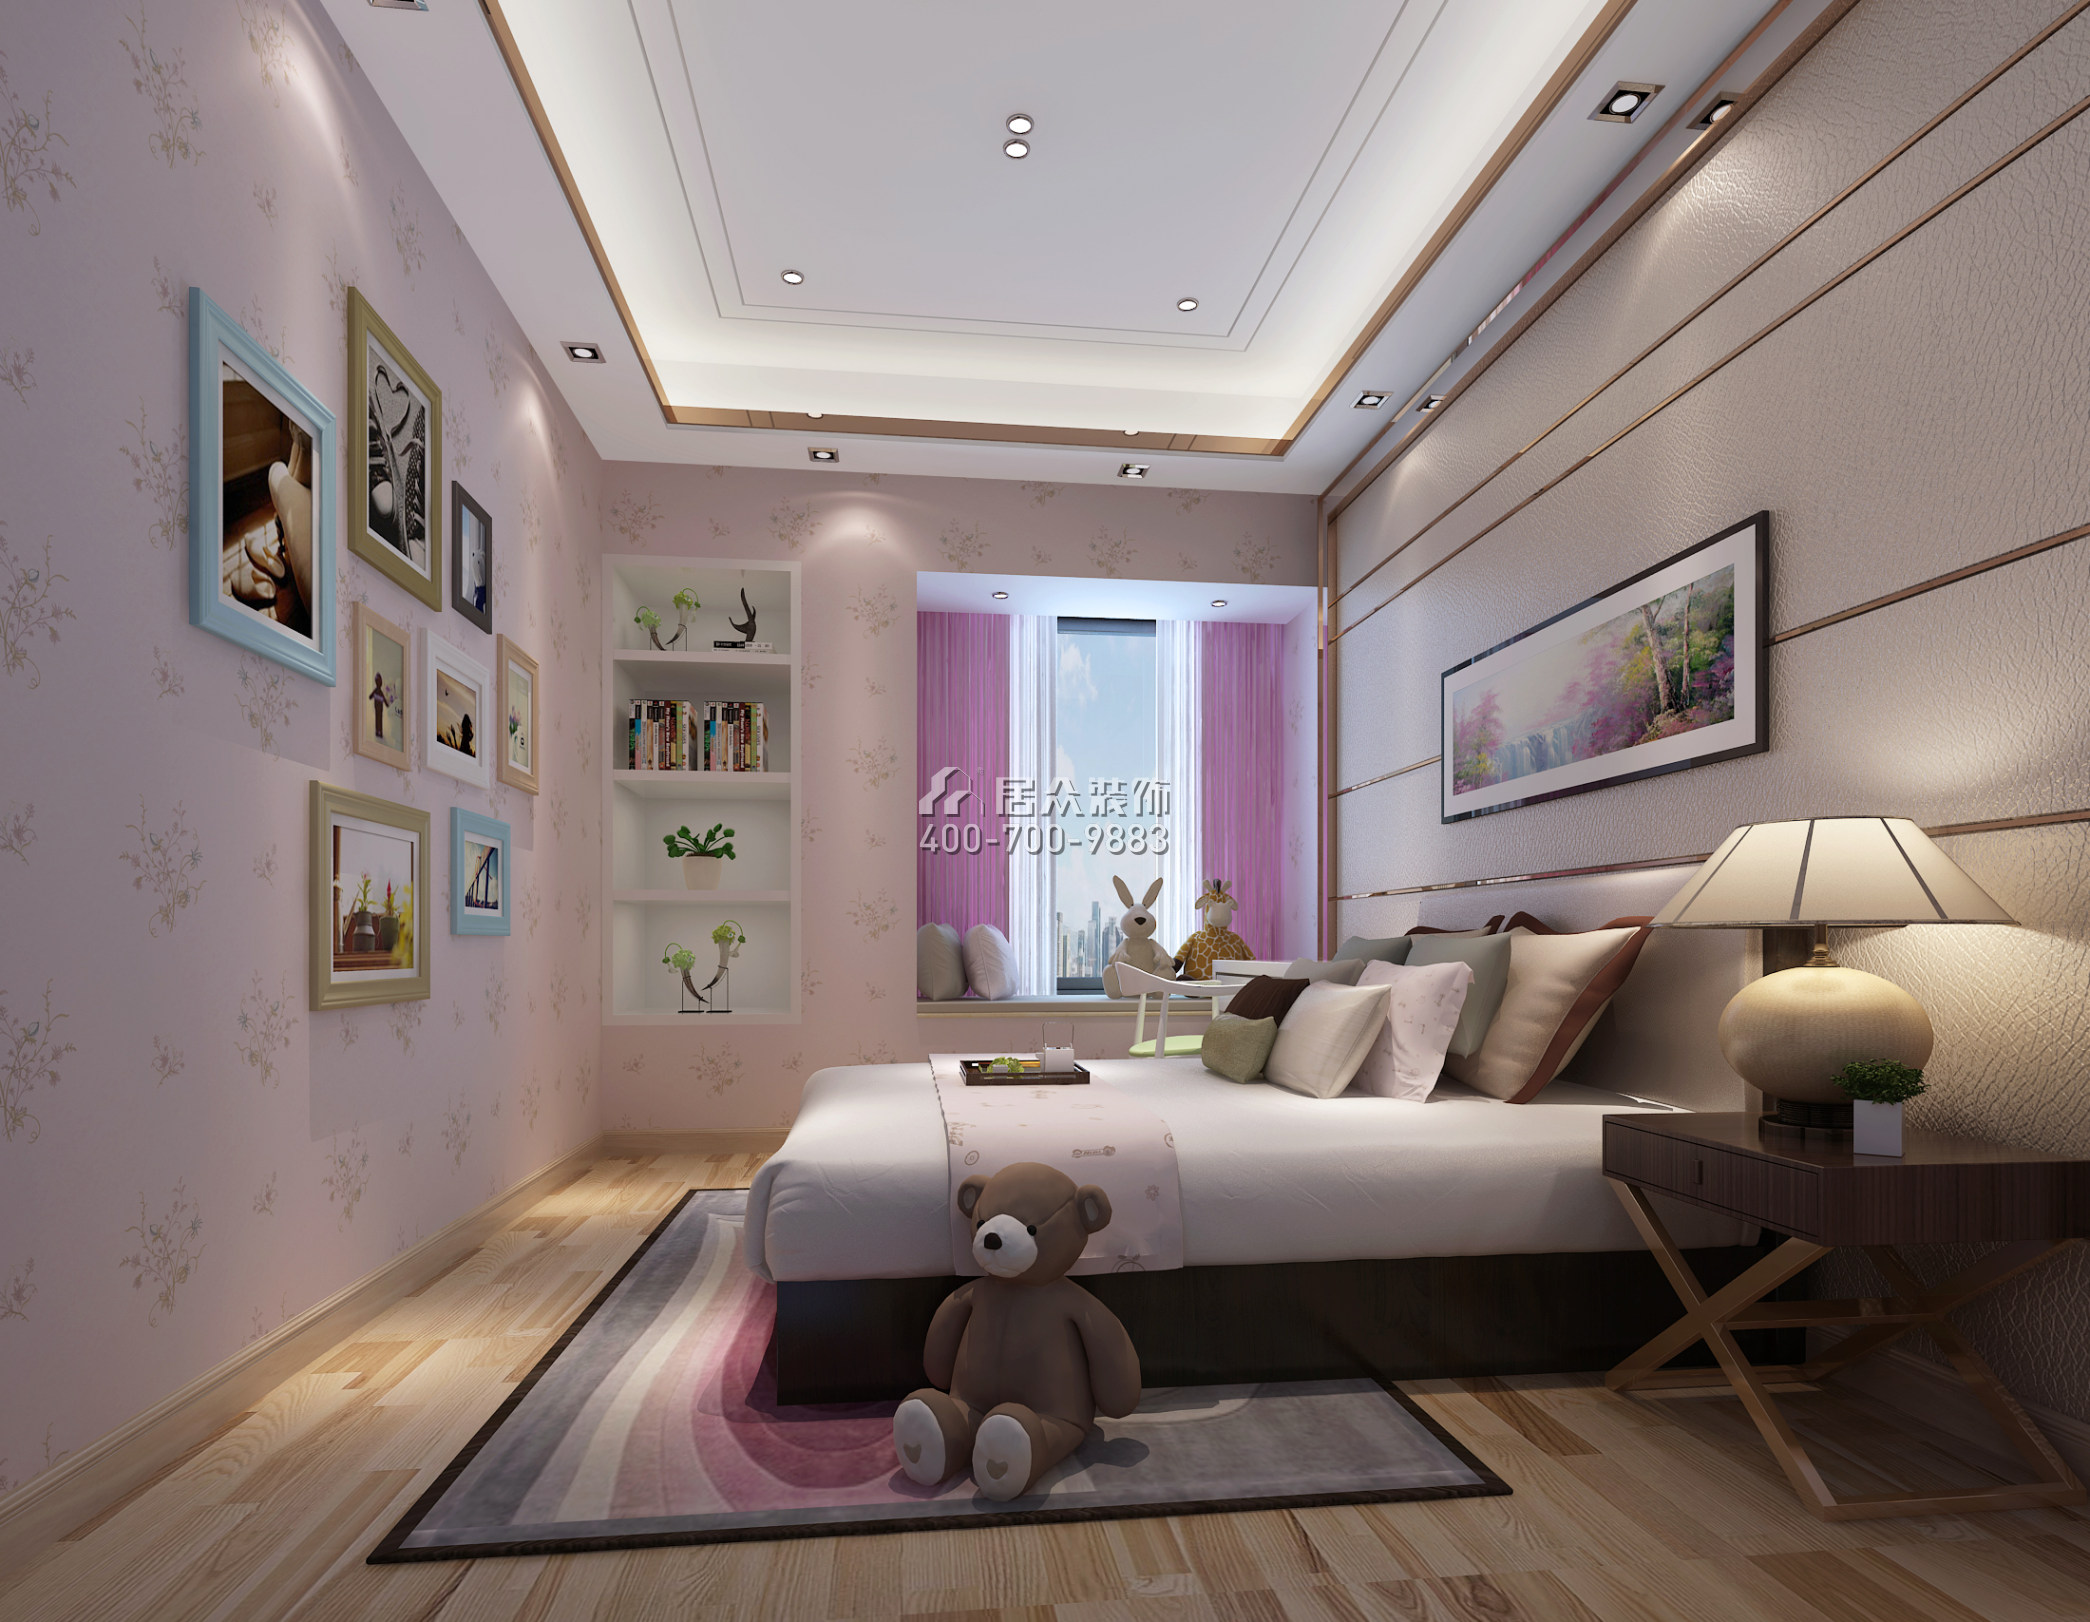 華僑城天鵝湖270平方米中式風格平層戶型臥室裝修效果圖